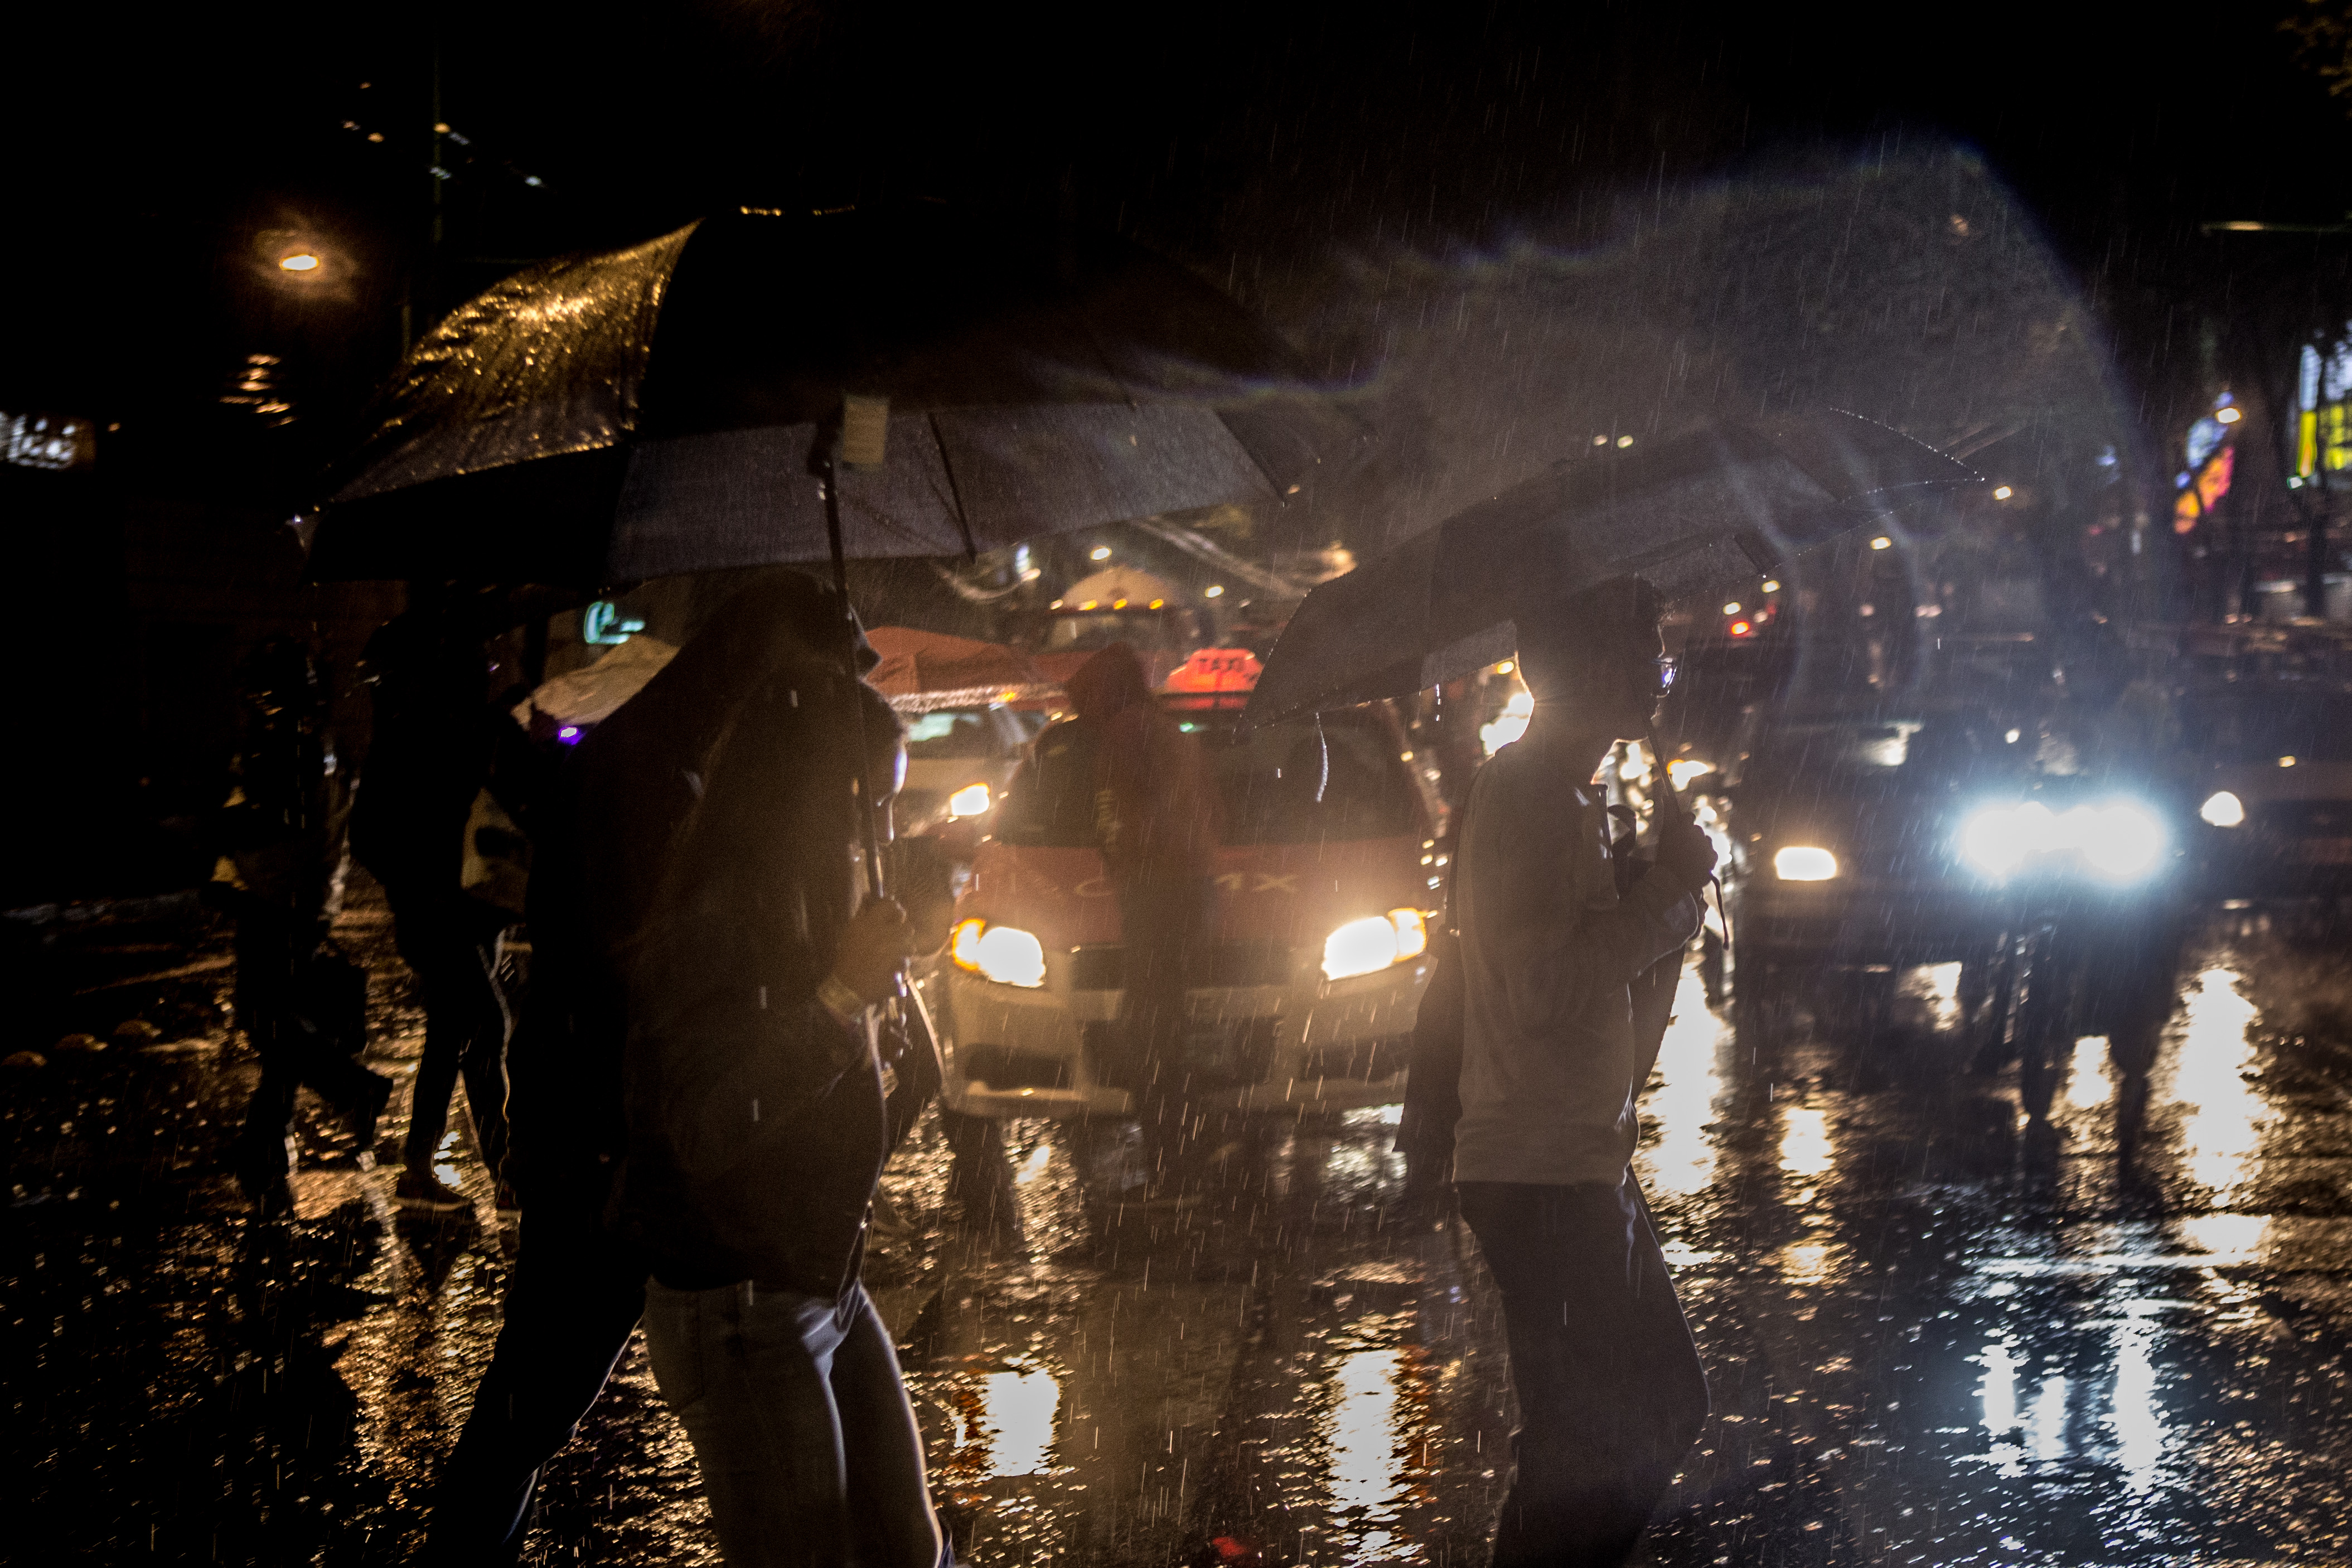 CIUDAD DE MÉXICO, 25JUNIO2018.- Decenas de capitalinos sacaron sus paraguas y capas de plastico esta noche debido a que se desató una intensa lluvia durante un par de horas. FOTO: TERCERO DÍAZ/ CAURTOSCURO.COM